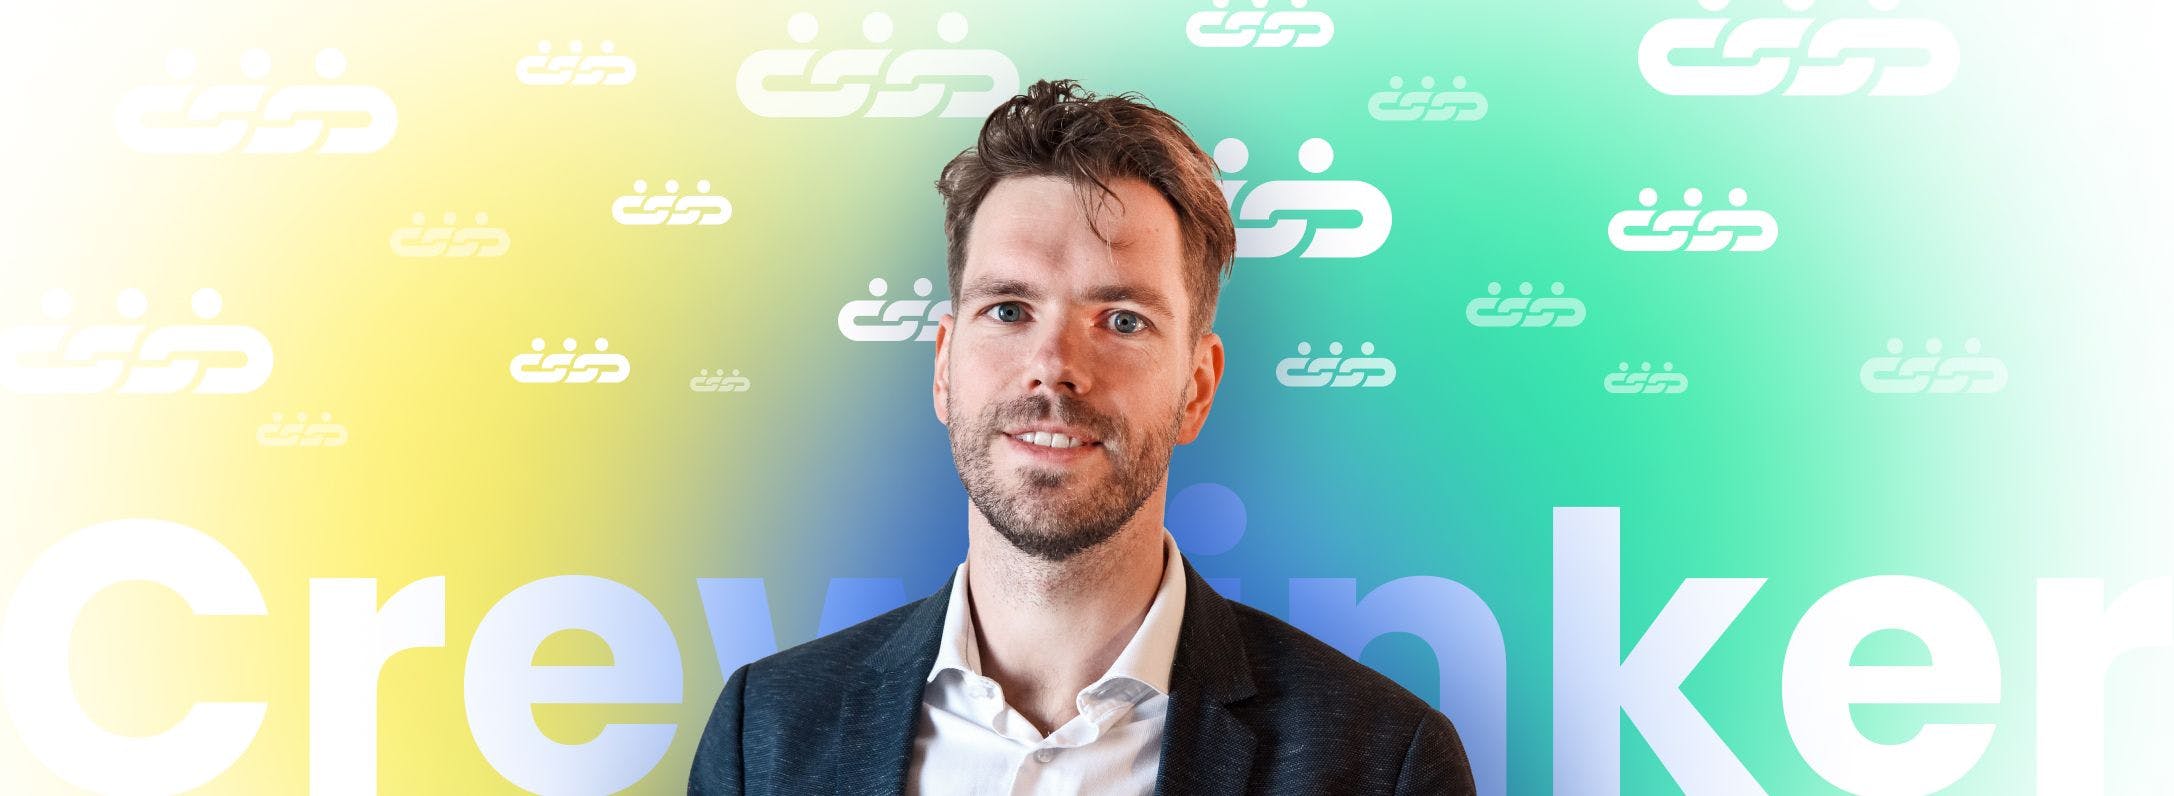 Adam van der Veer, founder and CEO of Crewlinker